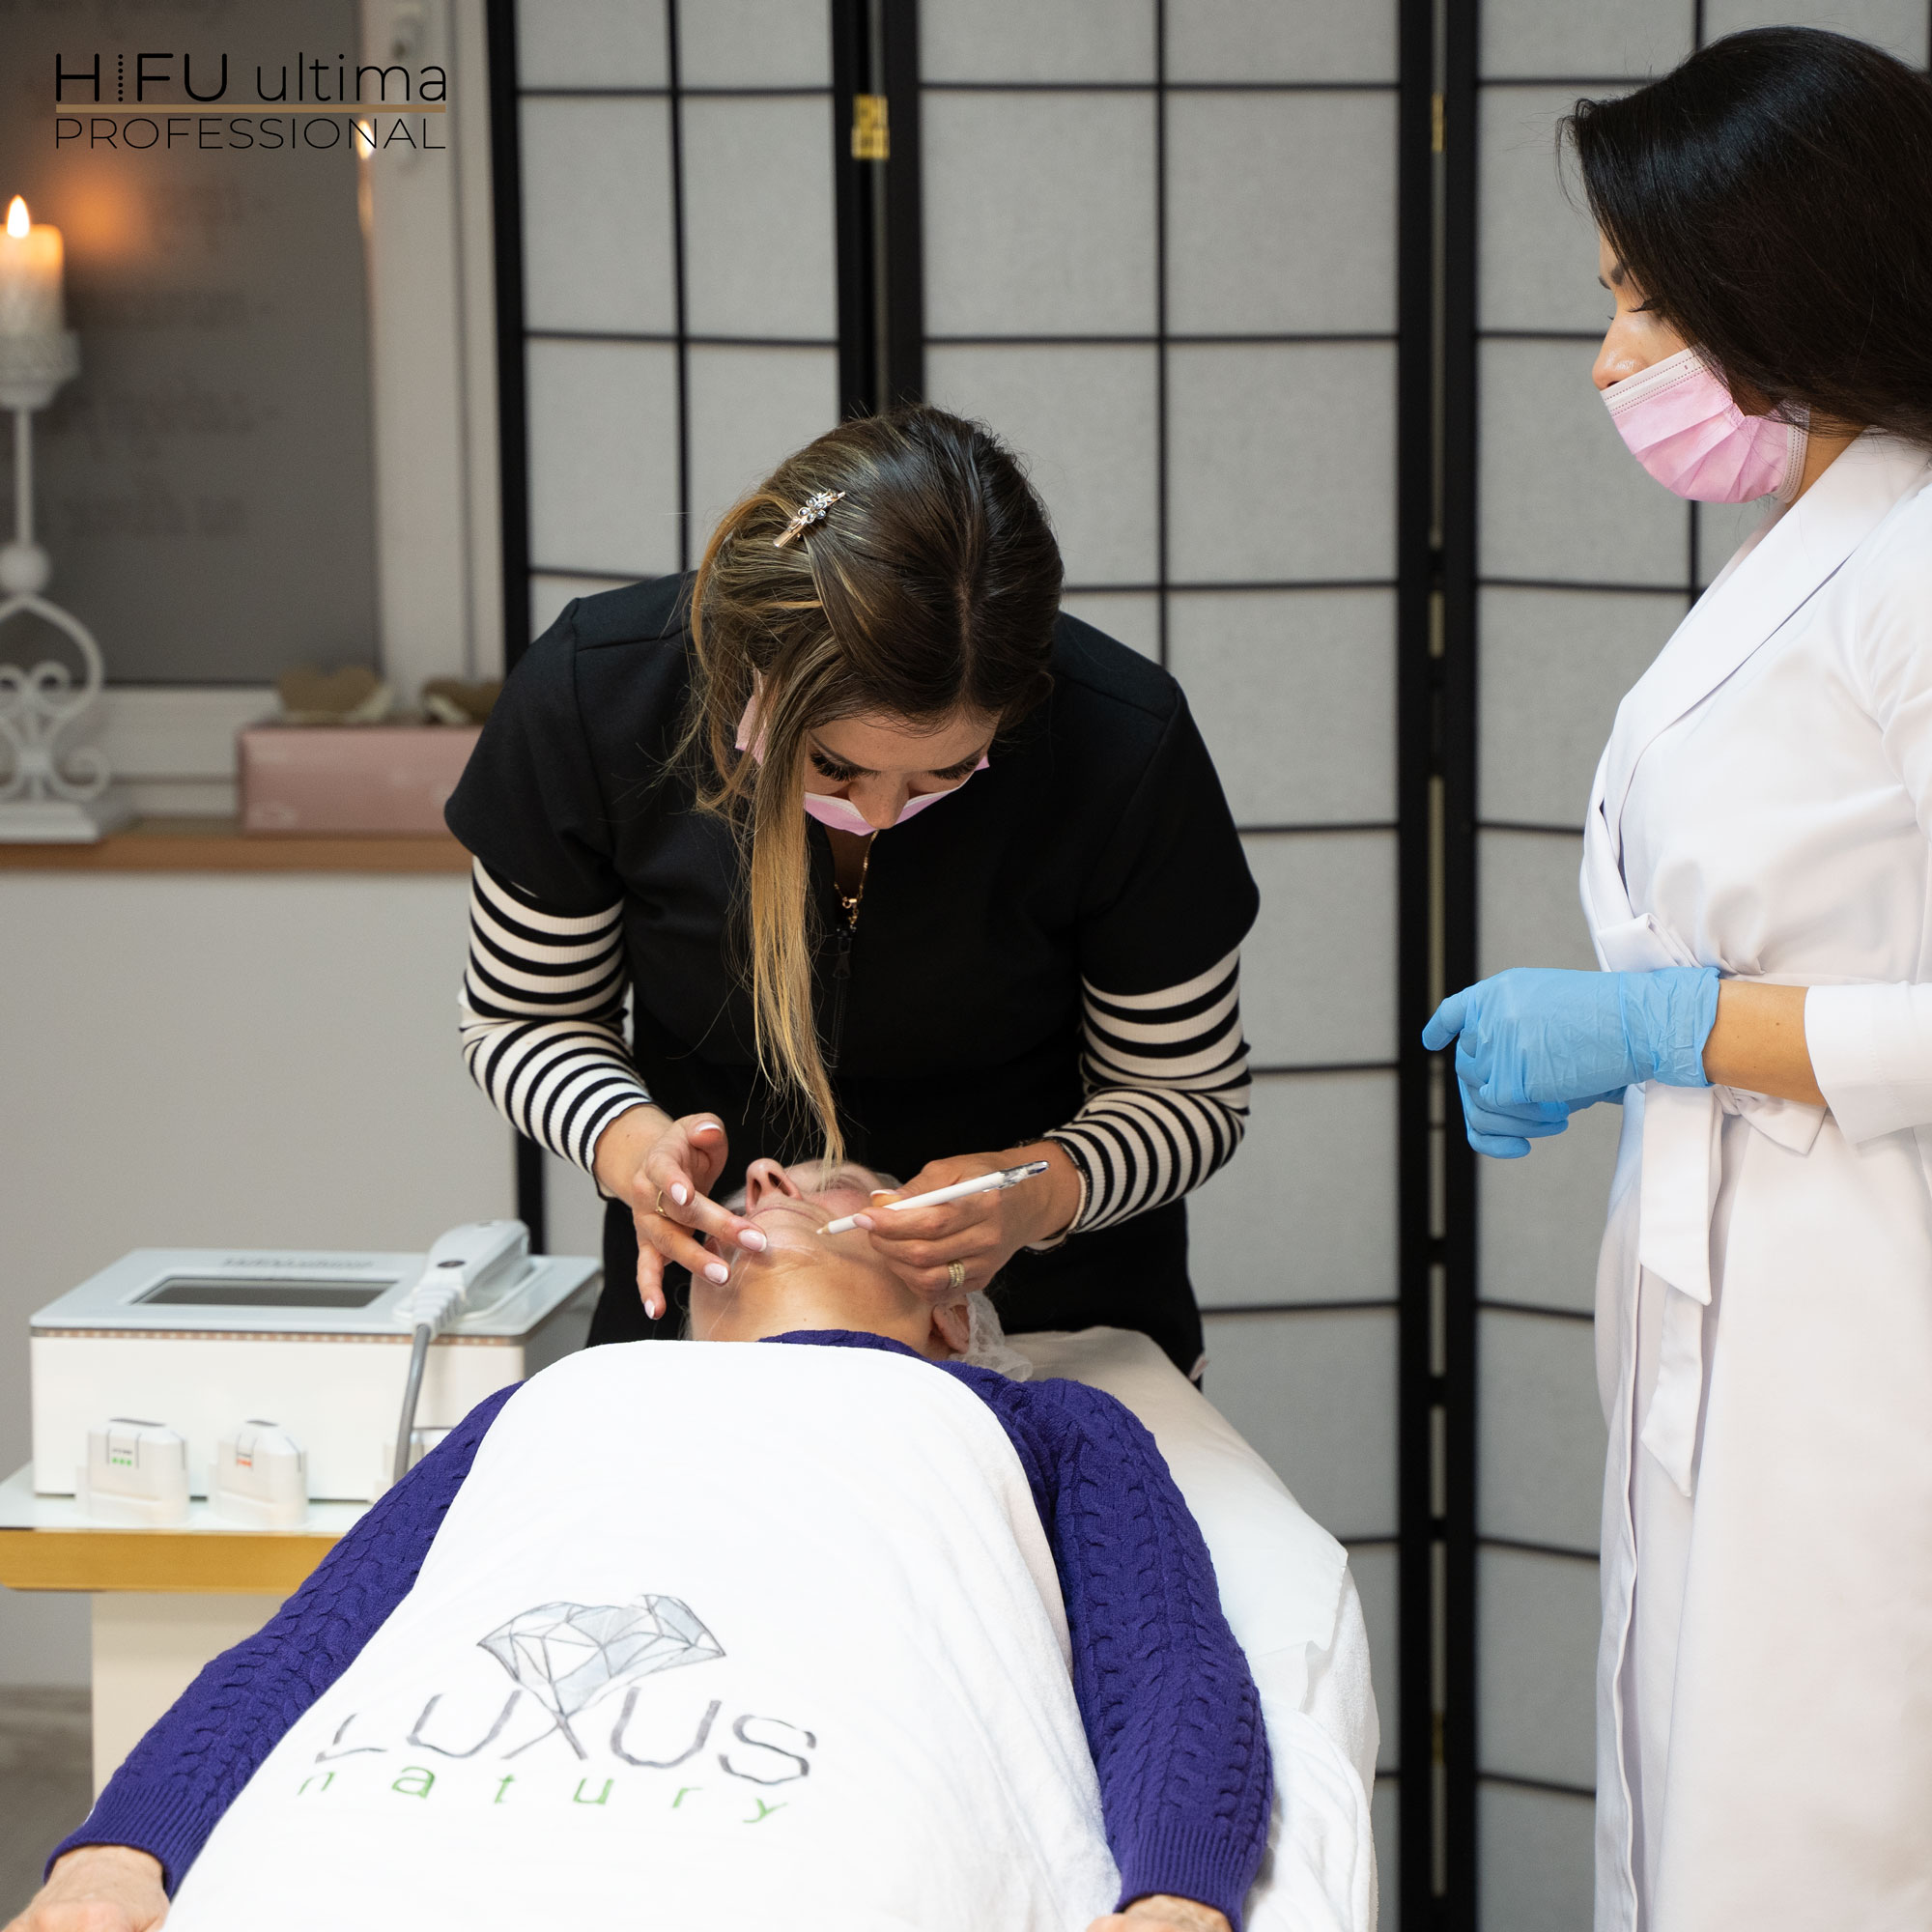 Szkolenie z wykorzystania wysokoskoncentrowanej wiązki ultradźwiękowej jest dedykowane kosmetologom i lekarzom medycyny estetycznej